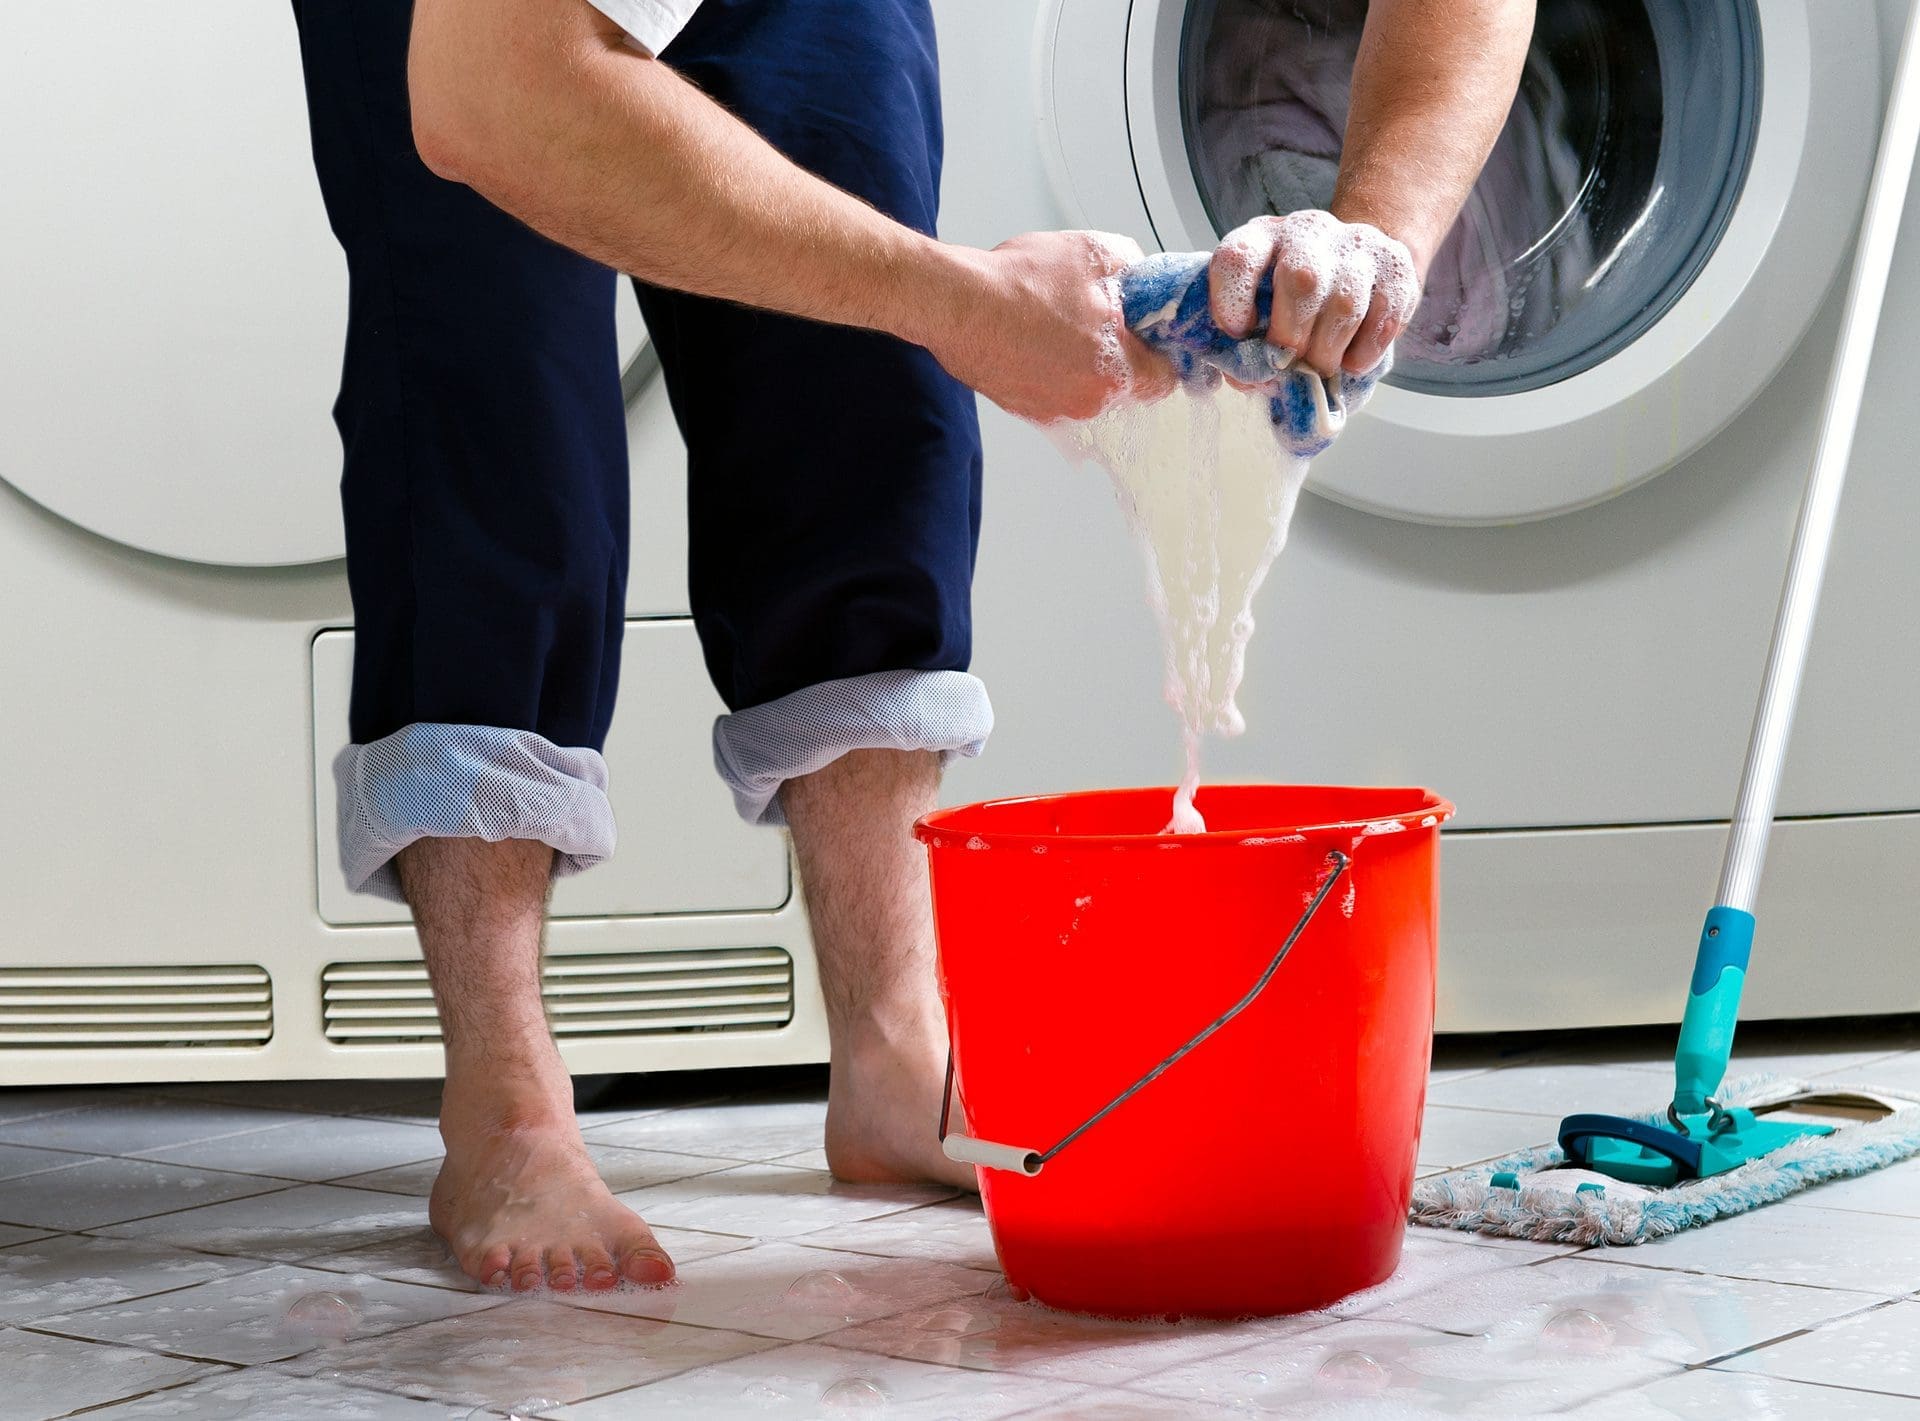 Wasserschaden im Haus durch ausgelaufene Waschmaschine? (© Dron / stock.adobe.com)